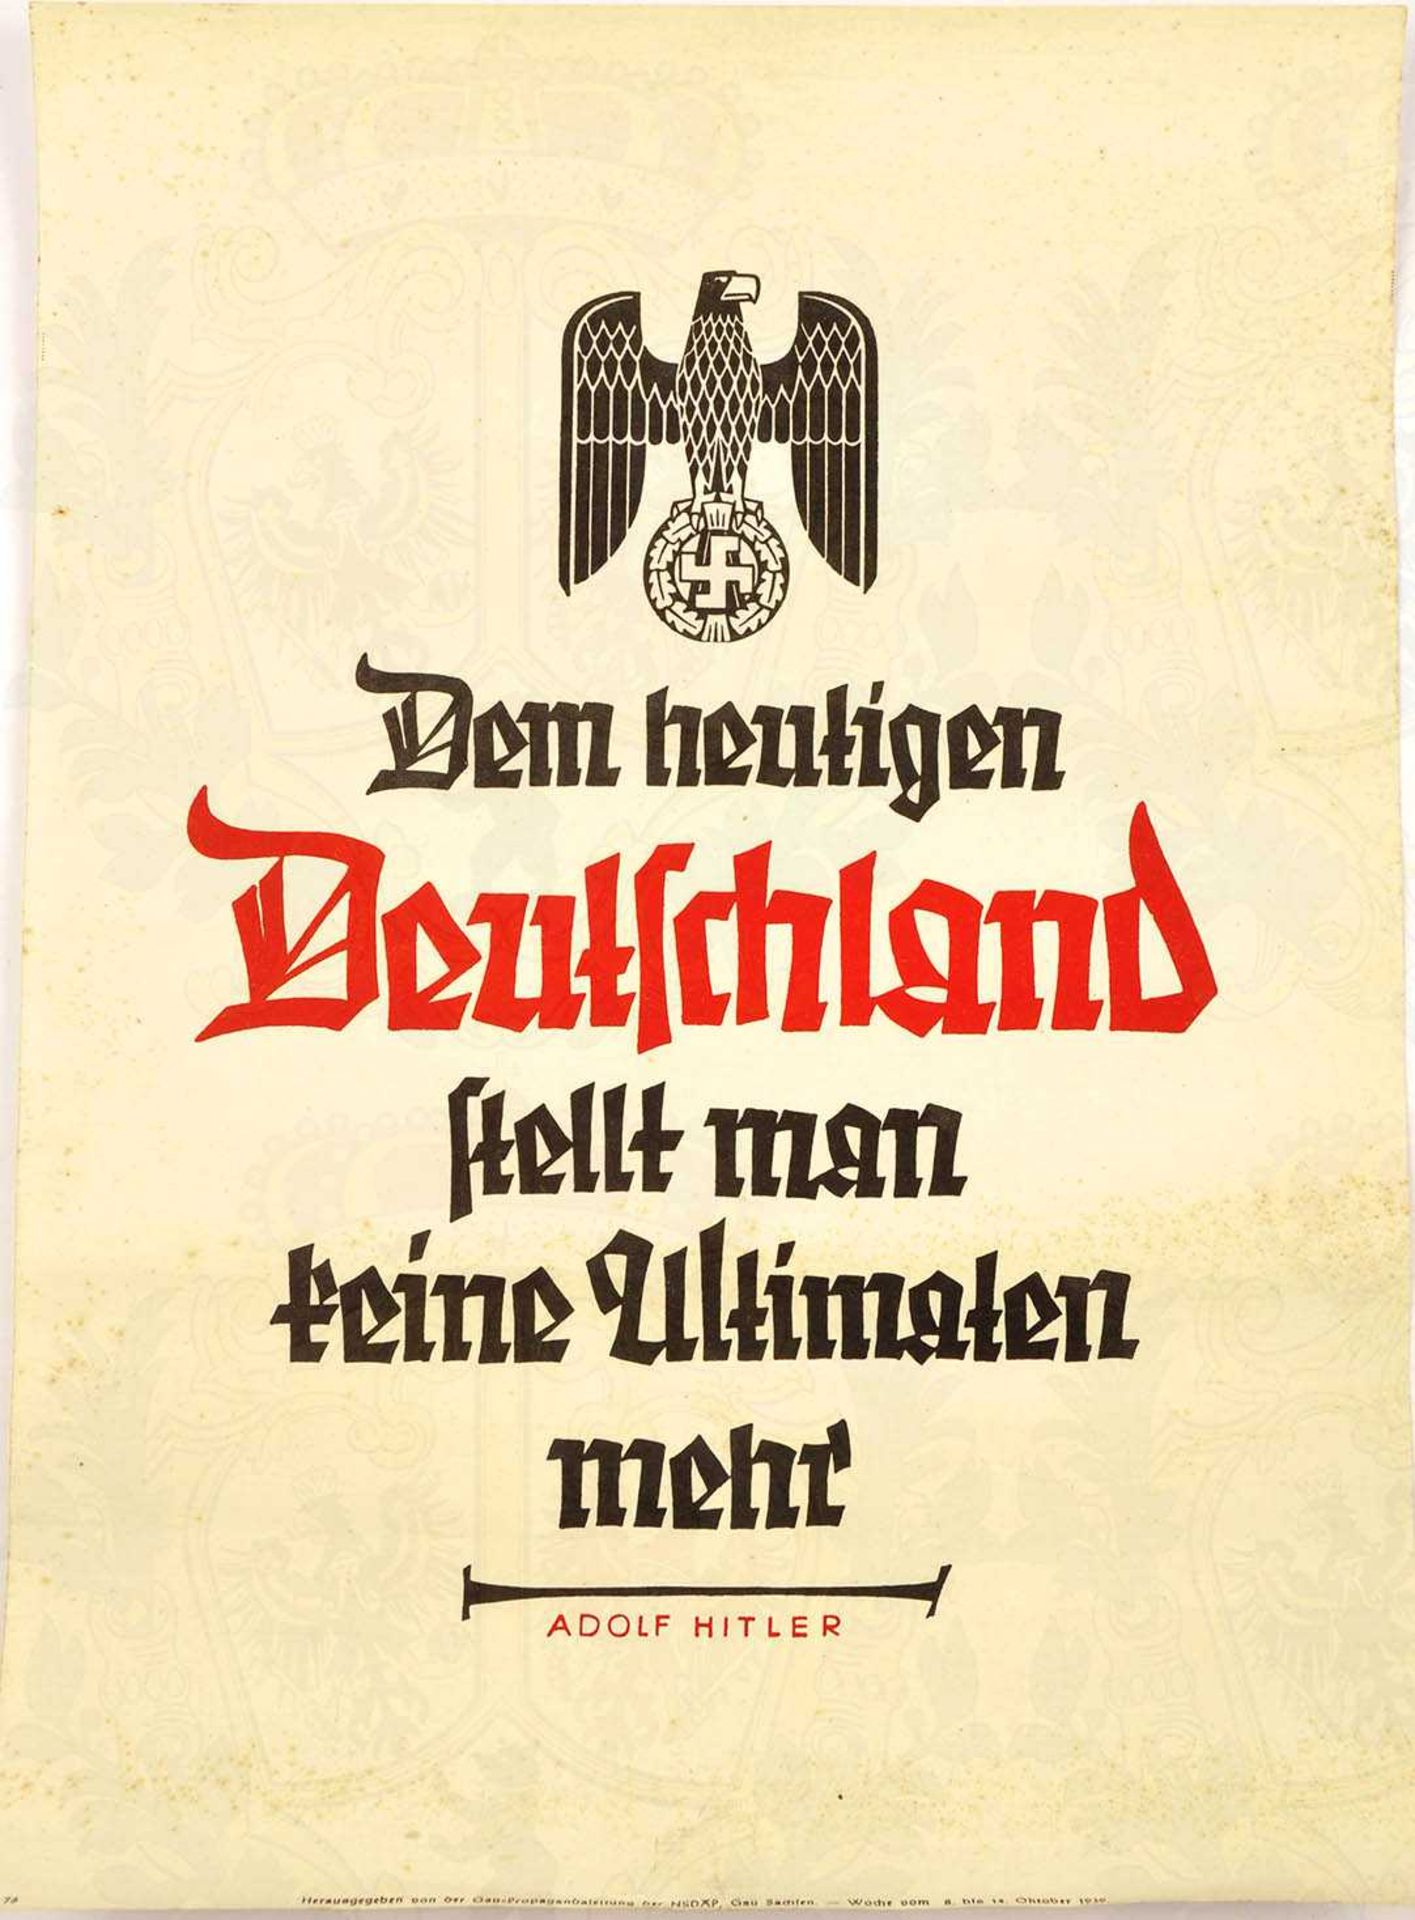 WOCHENSPRUCH DER NSDAP, "Dem heutigen Deutschland stellt man keine Ultimaten mehr", Hitler-Zitat,